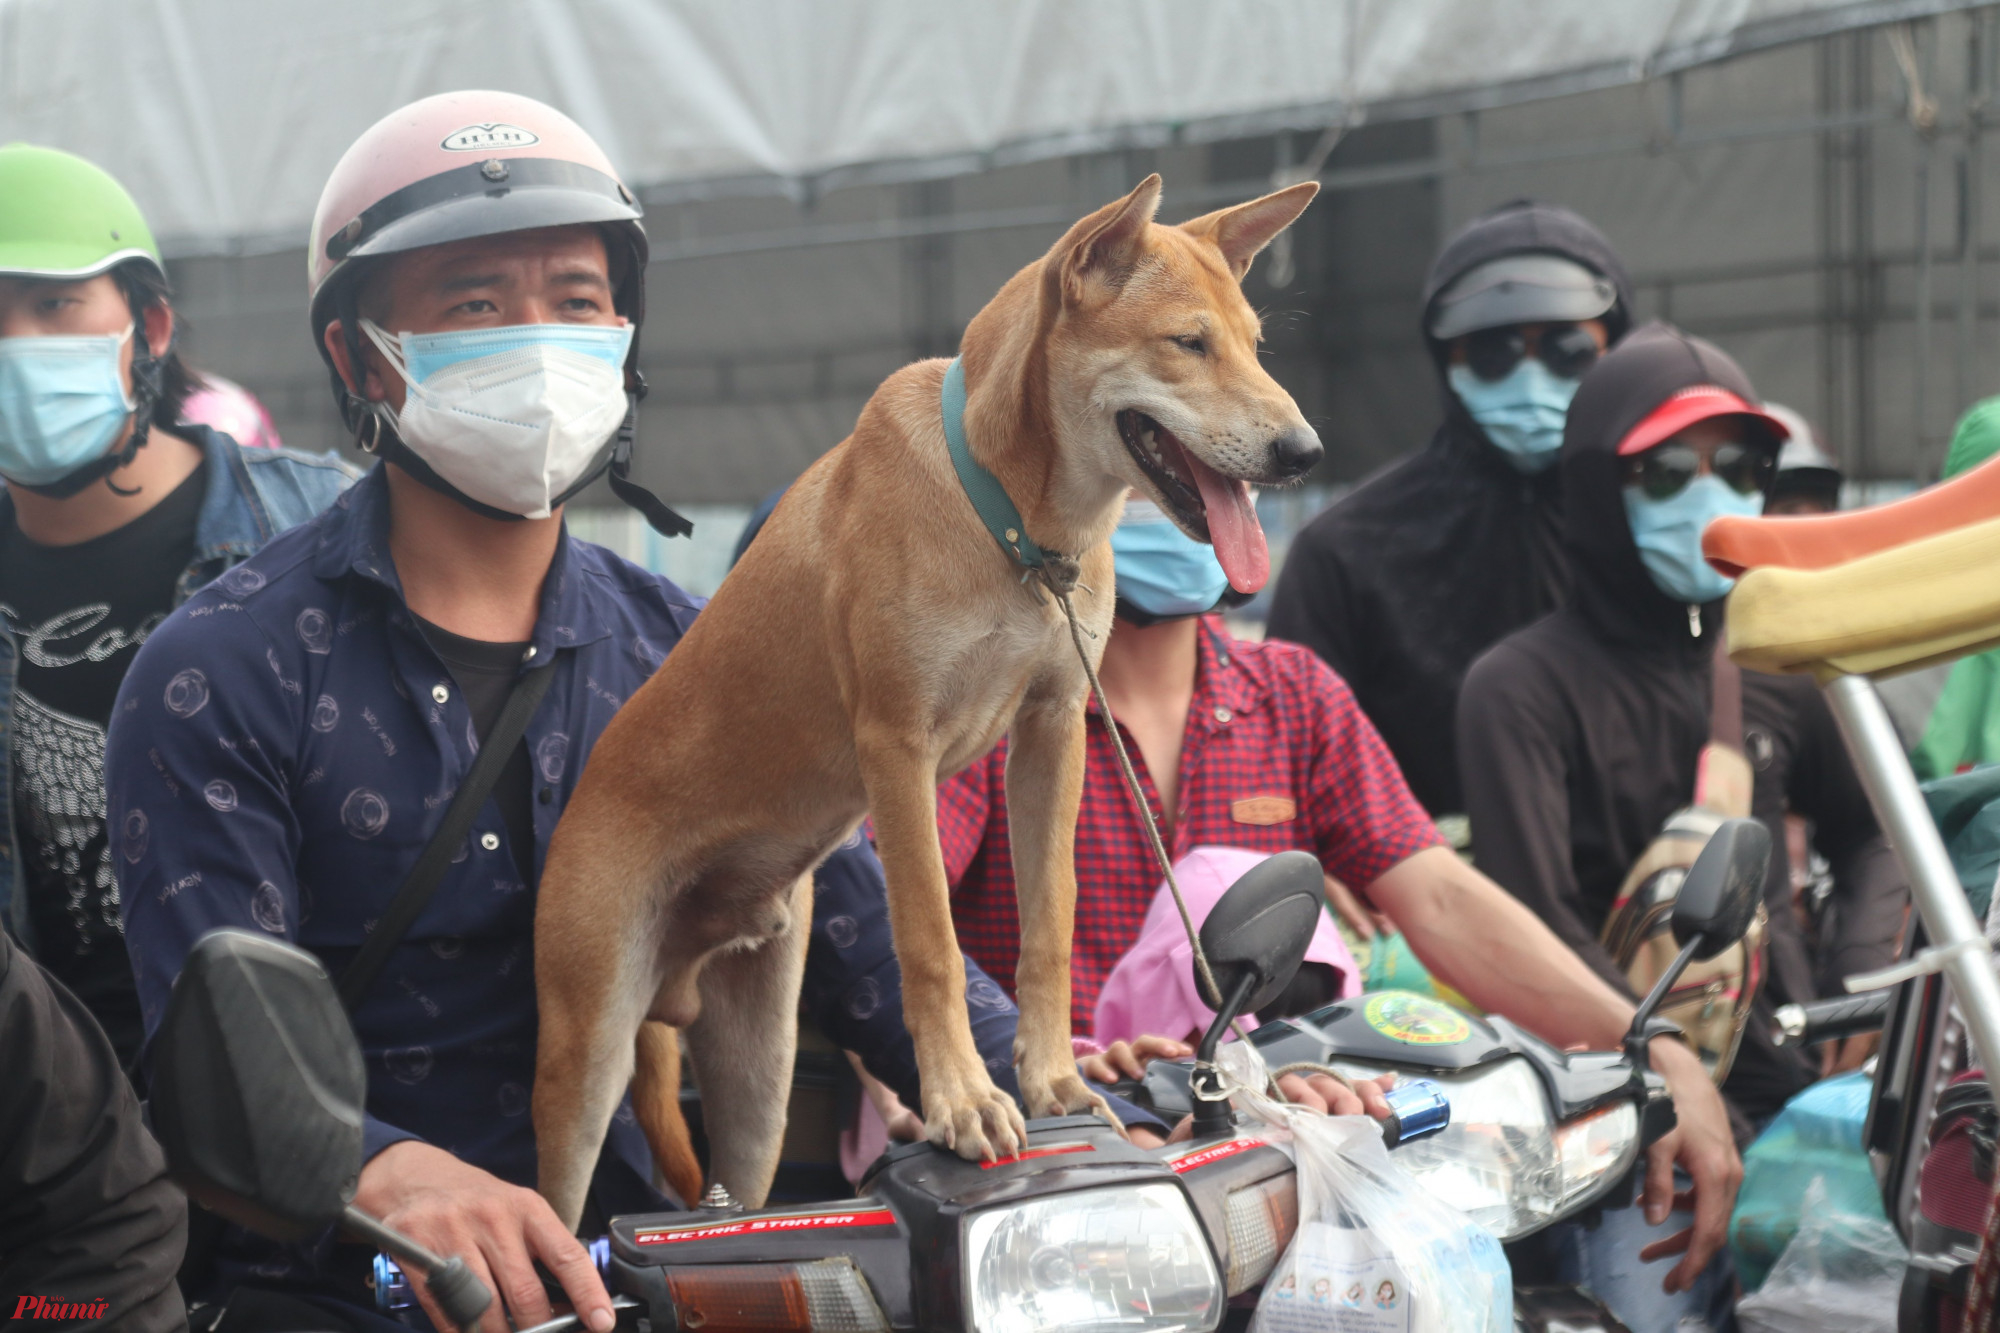 “Con chó này tôi nuôi ở trong phòng trọ ở Bình Dương lâu rồi. Tôi về bỏ nó lại thì không nỡ”, anh Nguyễn Văn Trọng (trú huyện Diễn Châu, Nghệ An) nói.